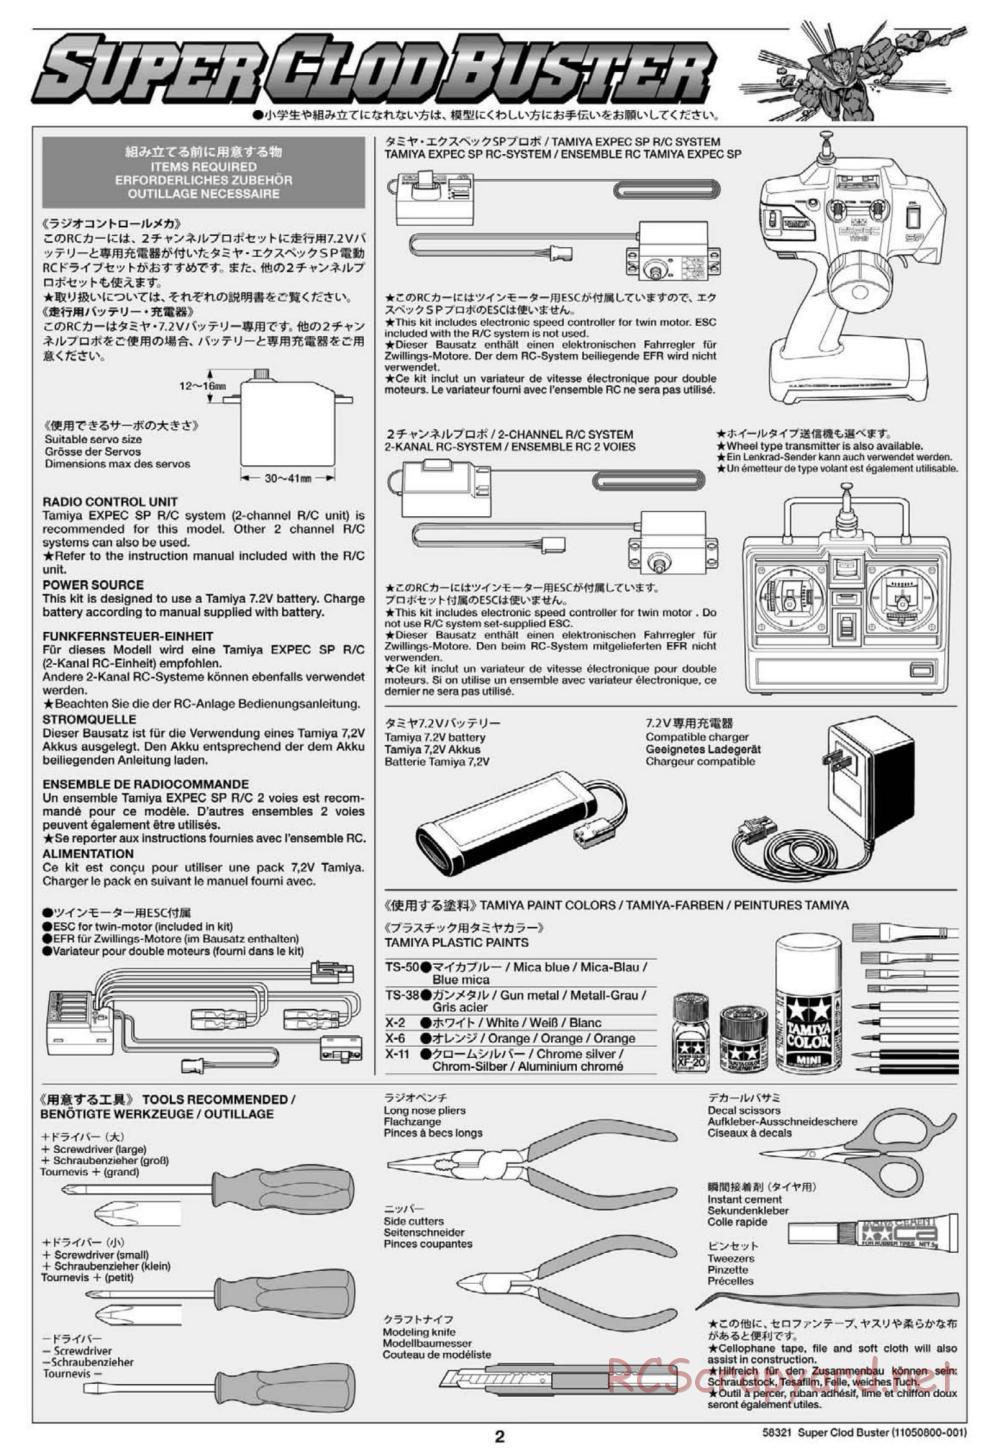 Tamiya - Super Clod Buster Chassis - Manual - Page 2